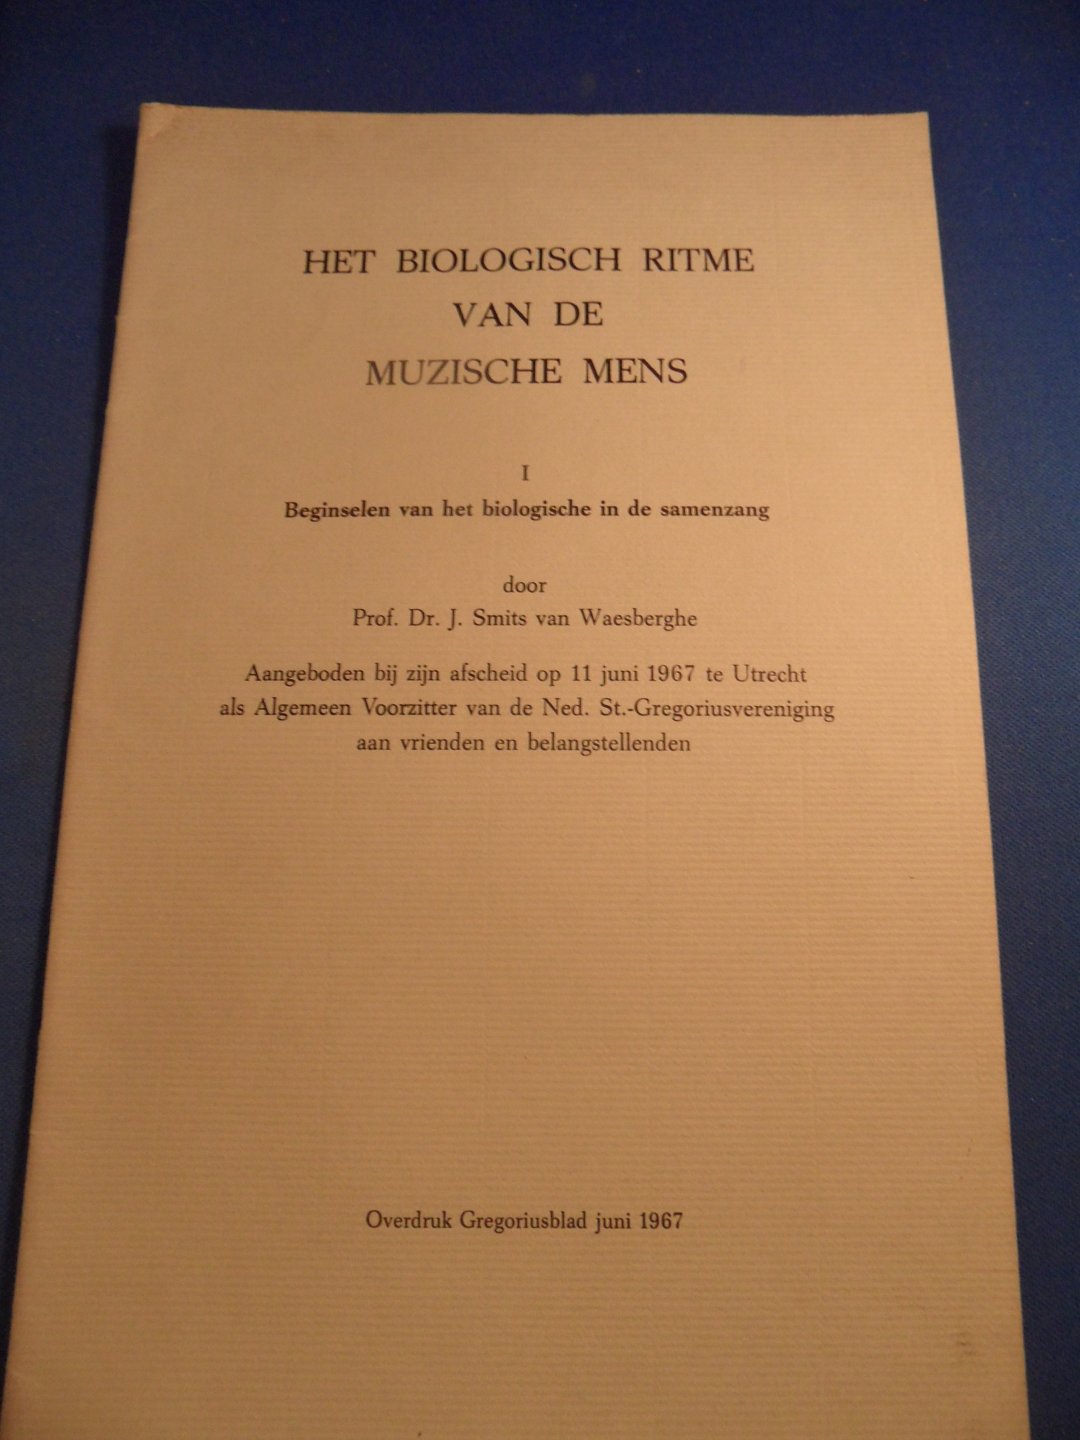 Smits van Waesberghe, prof. Dr. J. - Het biologische ritme van de muzische mens. Beginselen van het biologische in de samenzang.